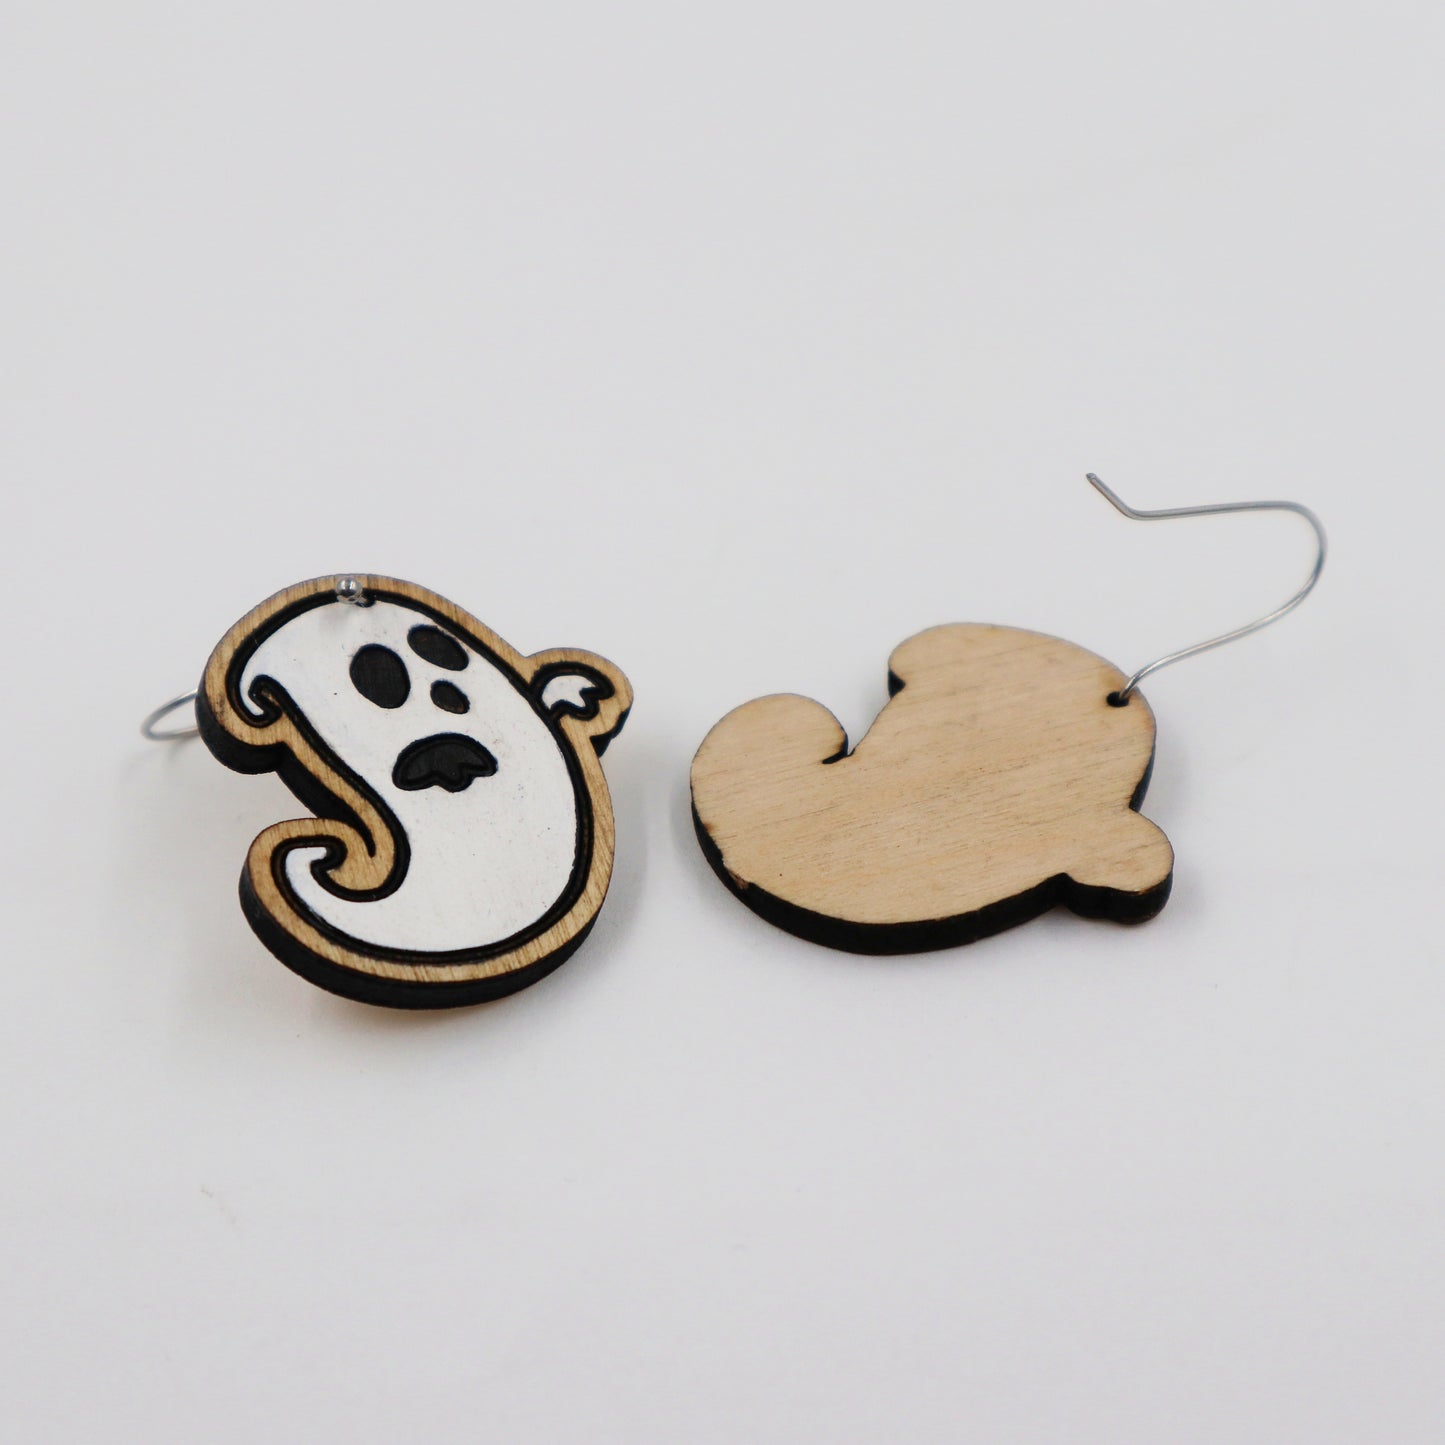 Wooden ghost Halloween earrings